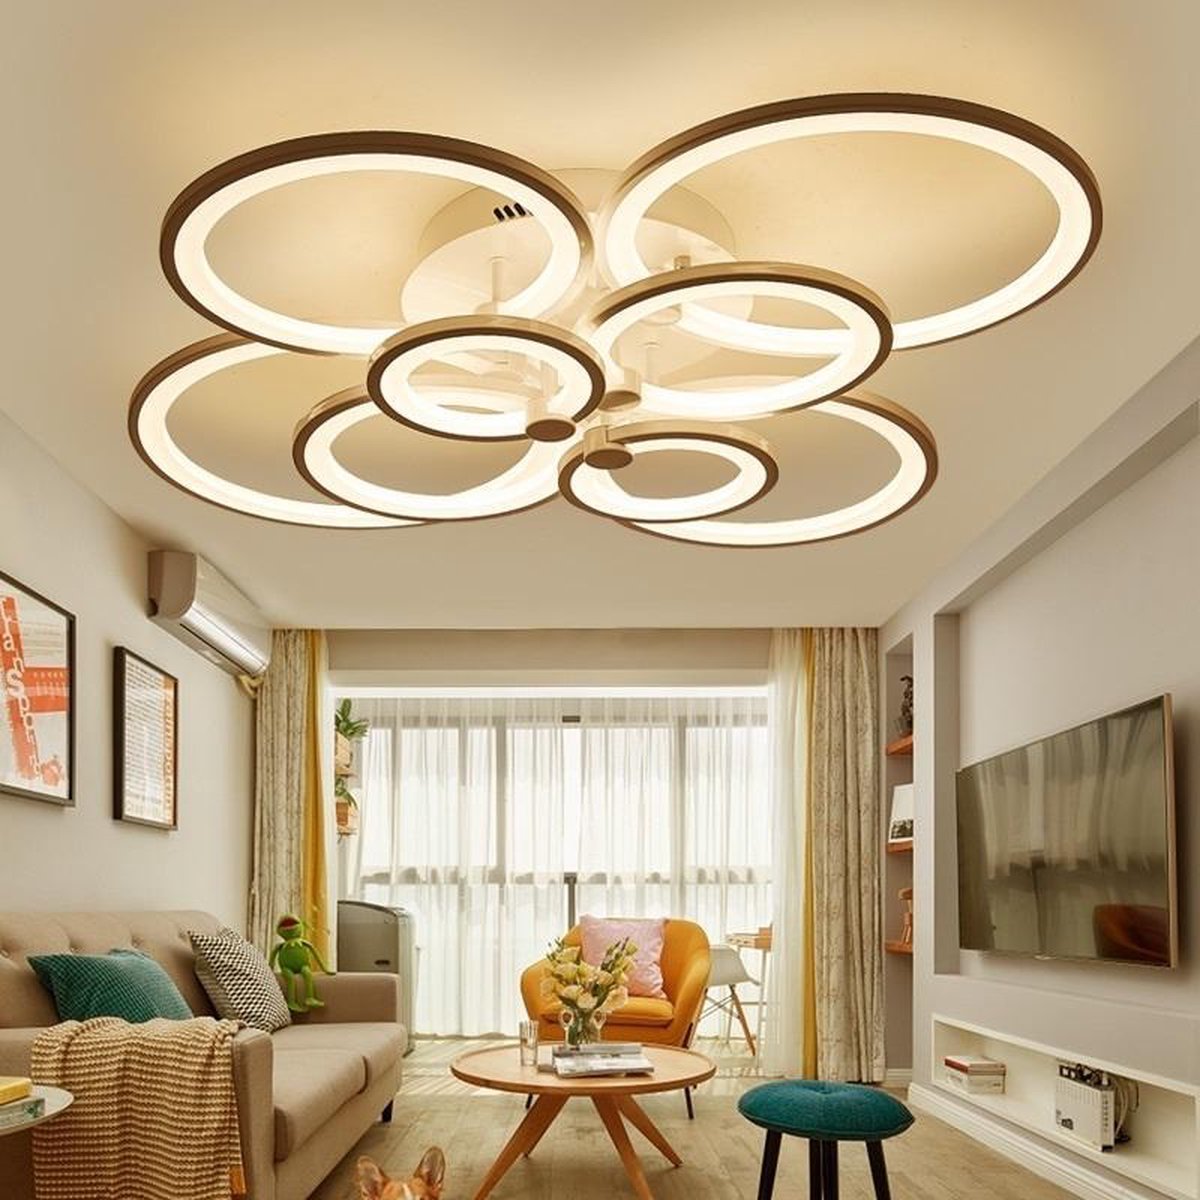 74W Creative ronde moderne kunst LED plafond lamp 8 koppen (warm wit) |  bol.com